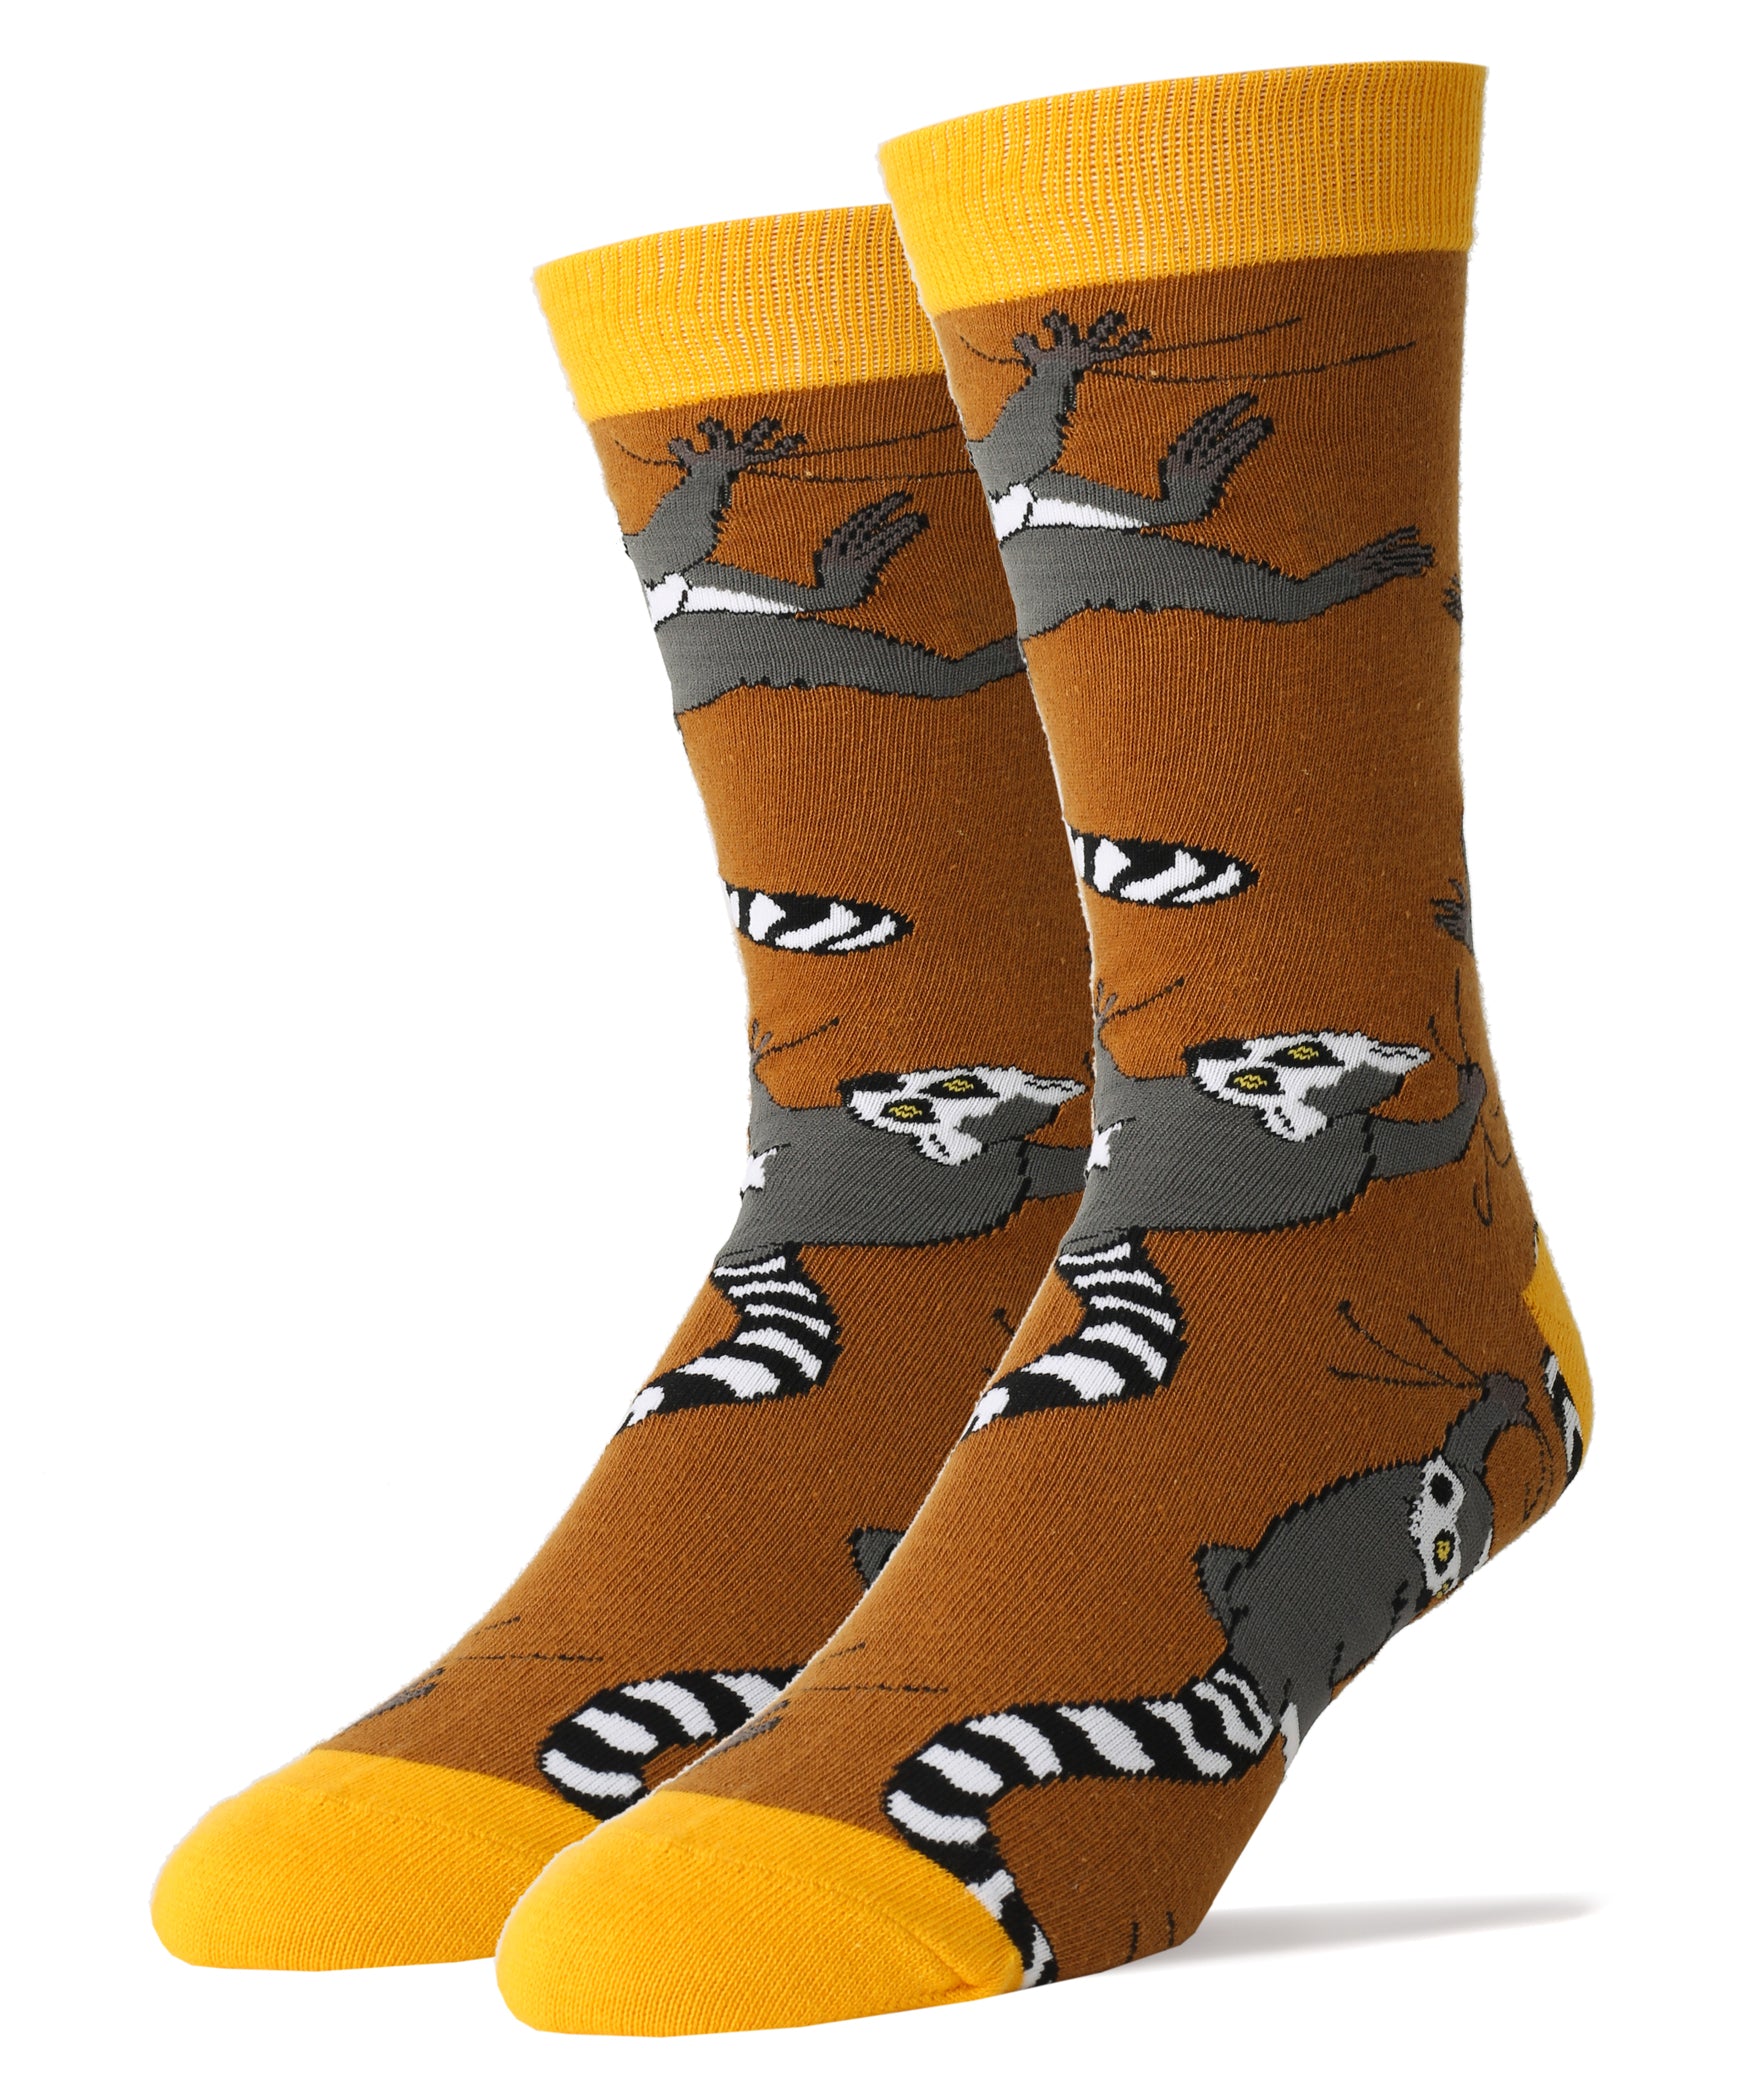 Lemur Buds - Oooh Yeah Socks